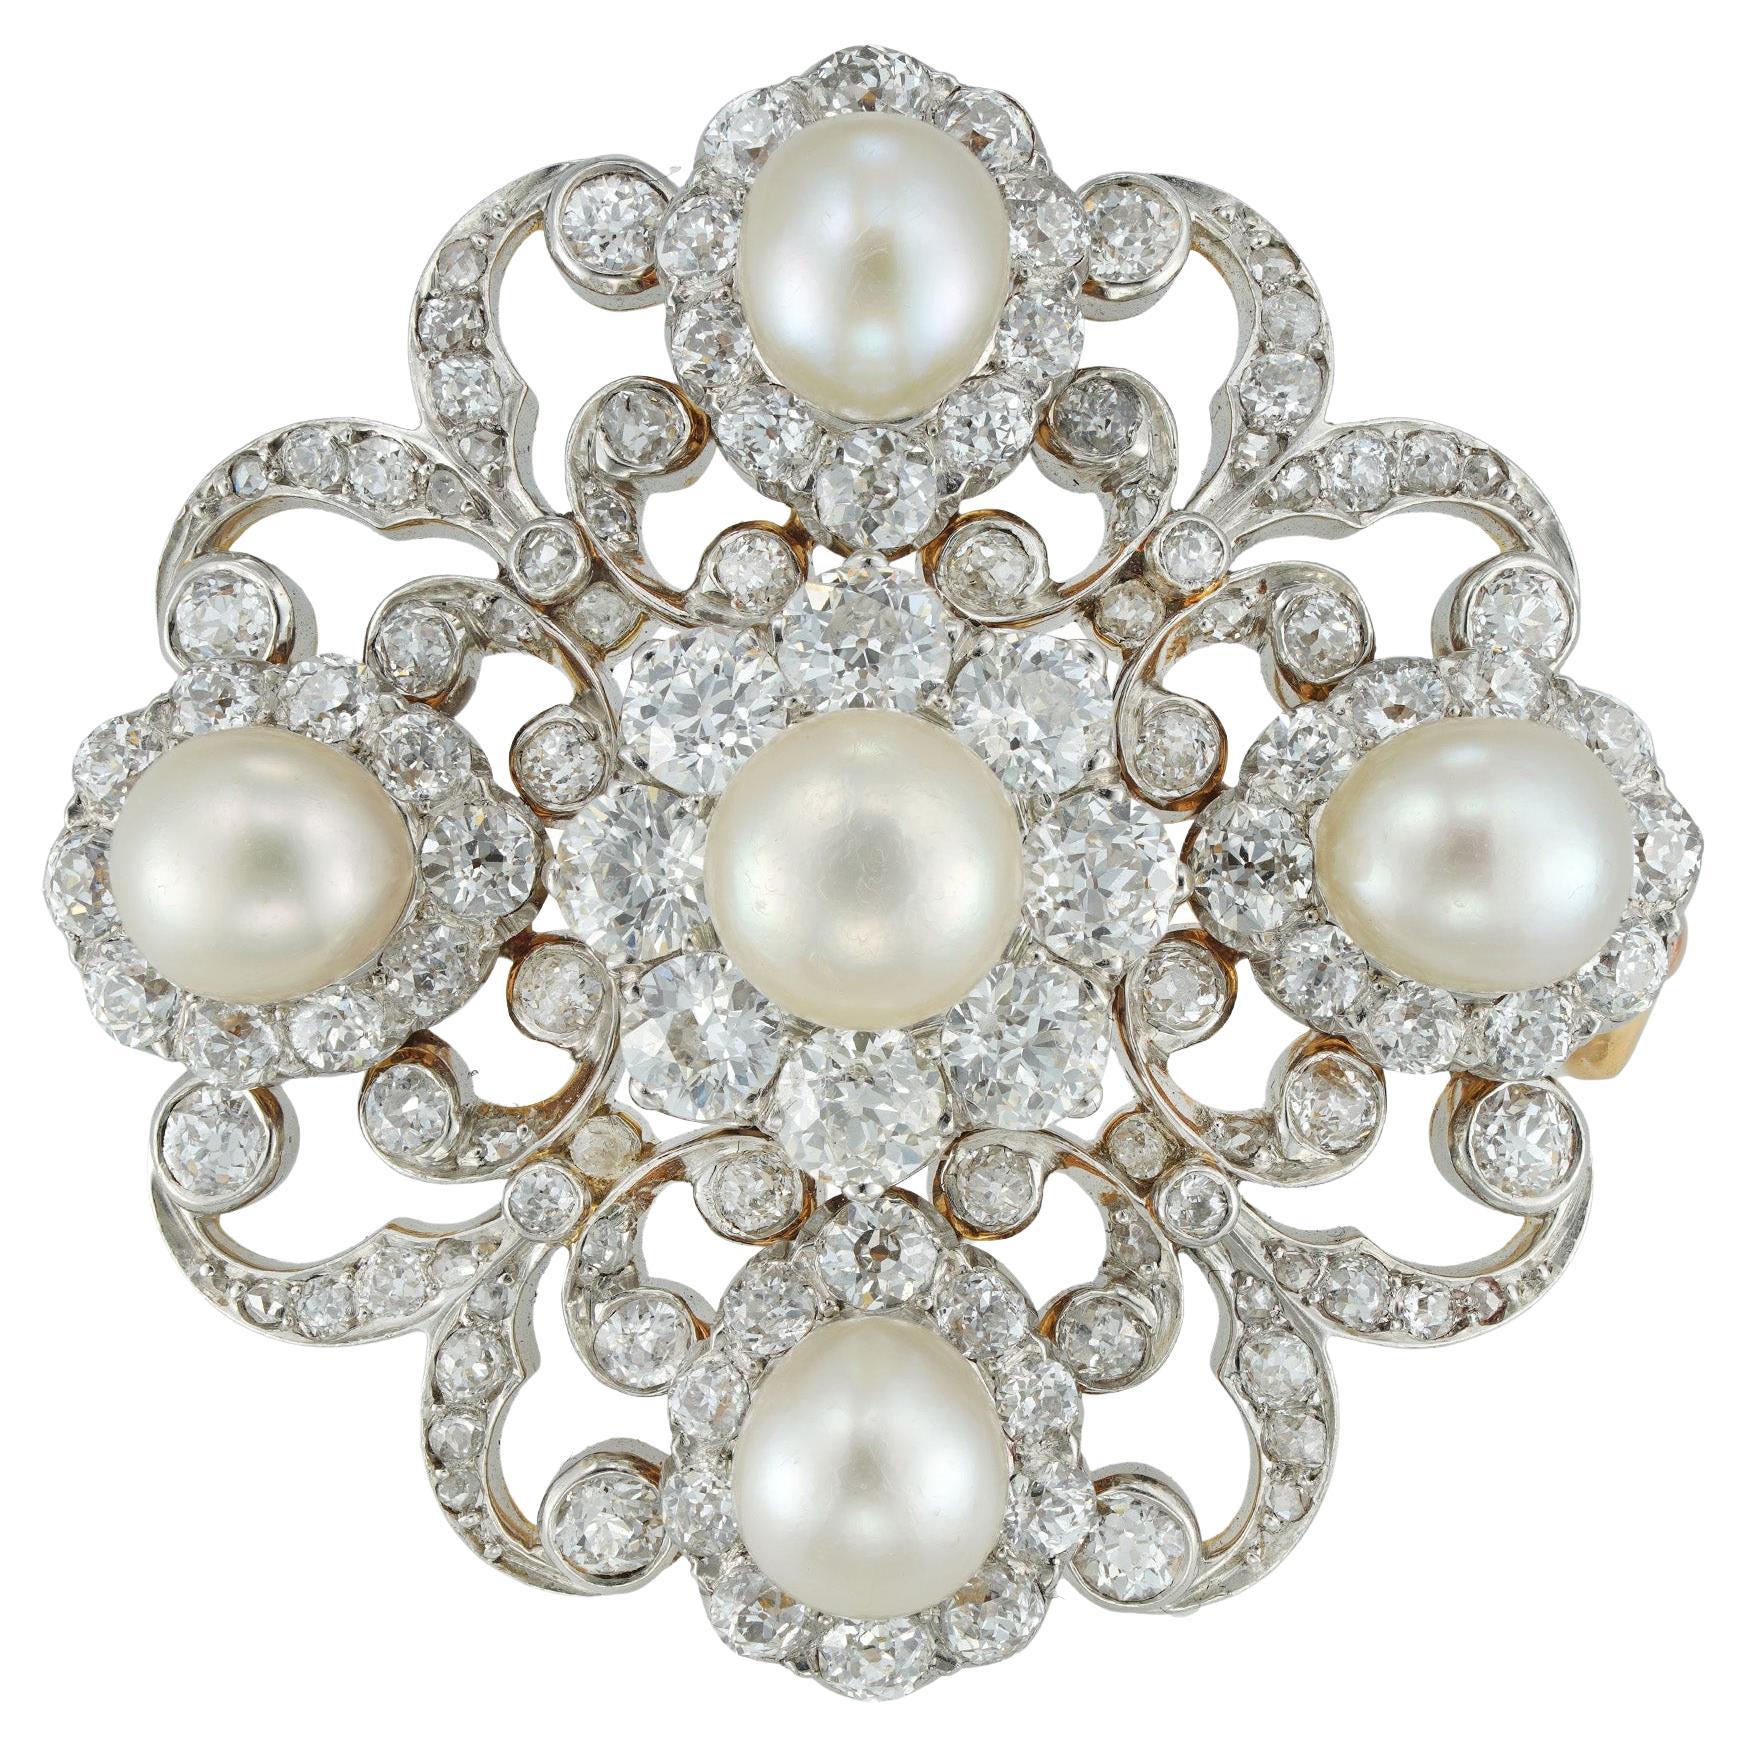 Viktorianische Schnörkelbrosche mit Diamanten und Perlen